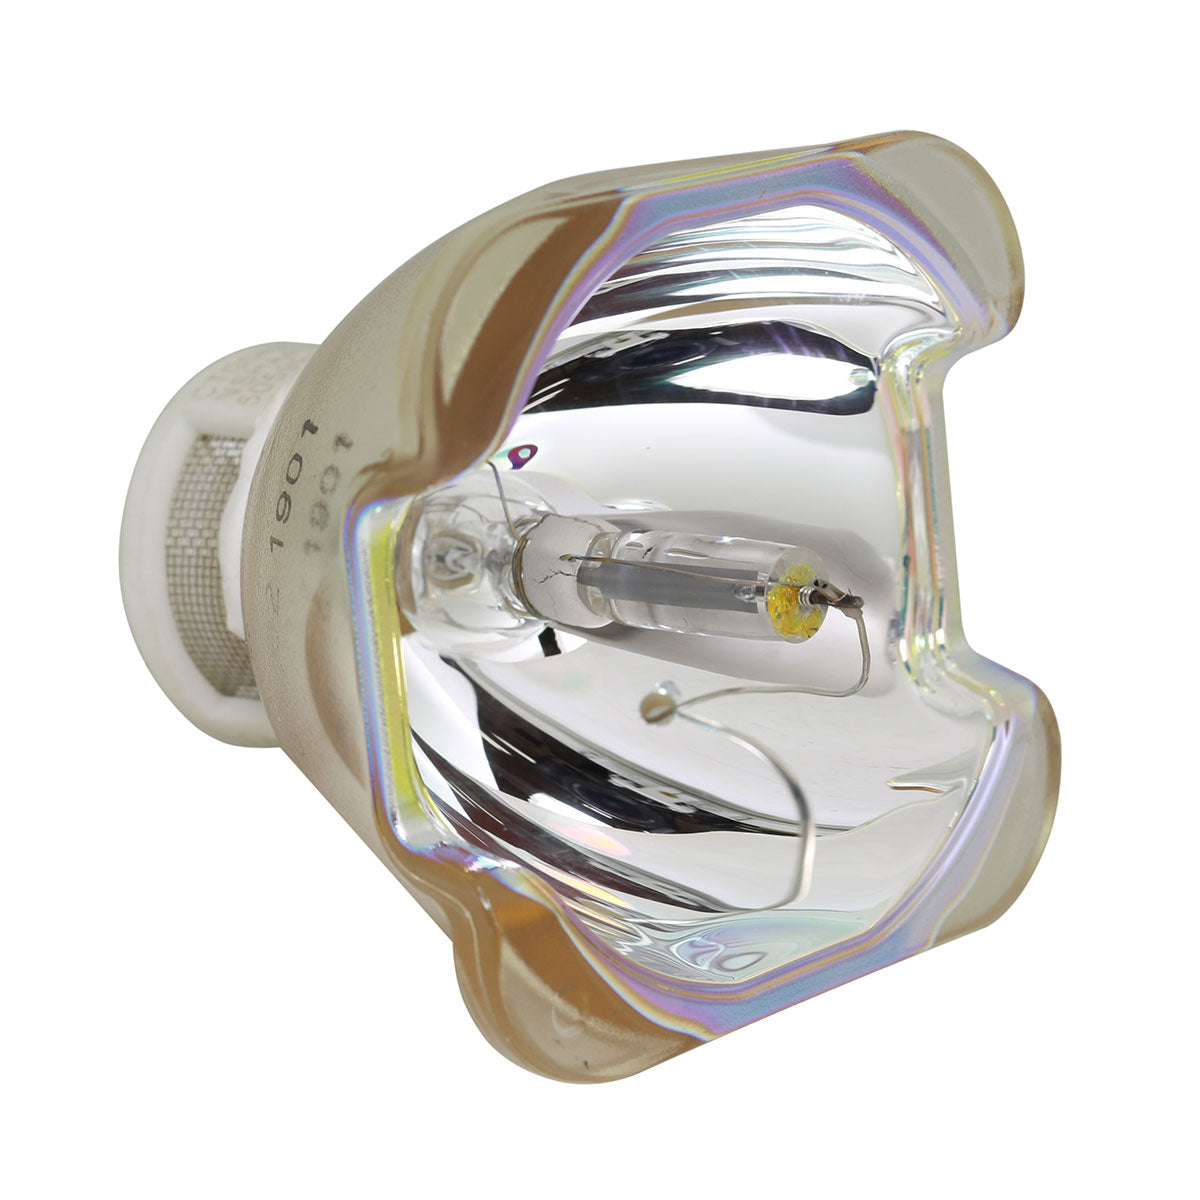 Eiki AH-CD3010 Ushio Projector Bare Lamp